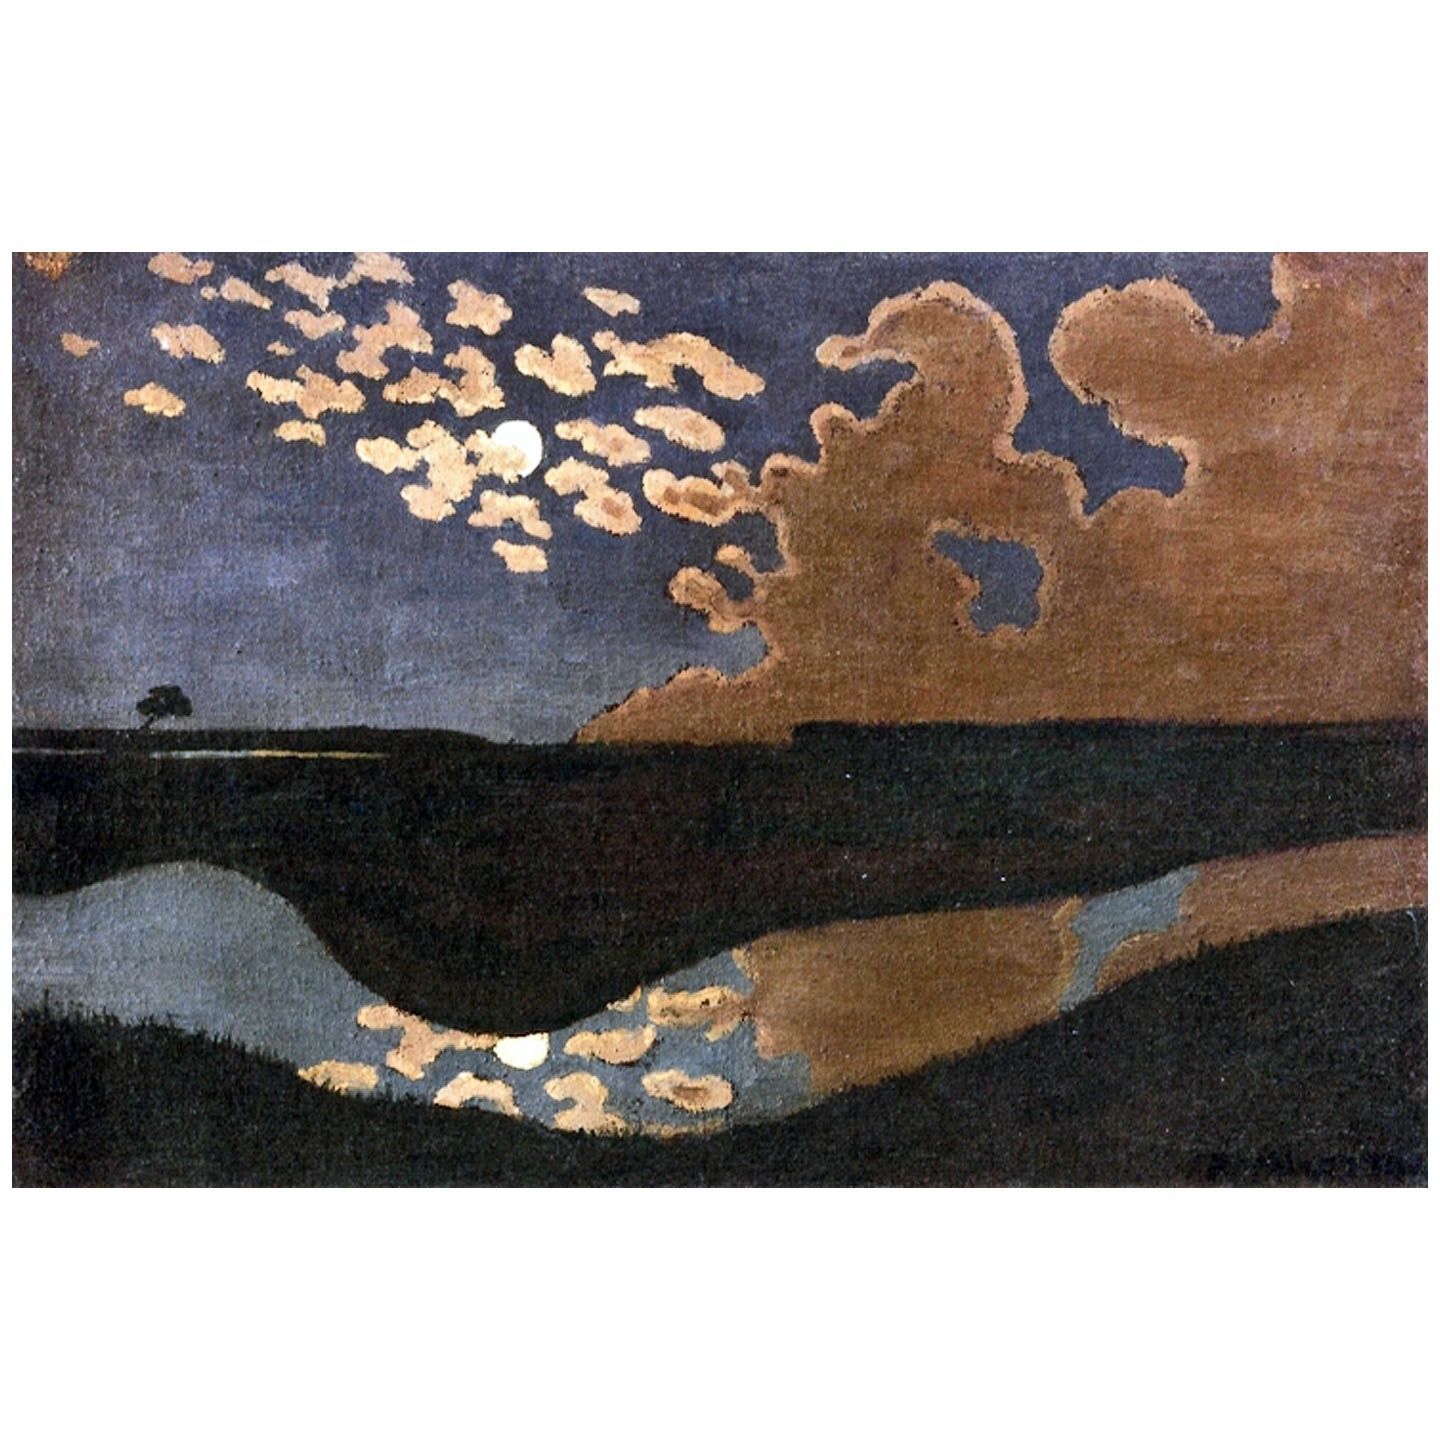 Felix Vallotton. Clair de lune. 1895. Musee d’Orsay